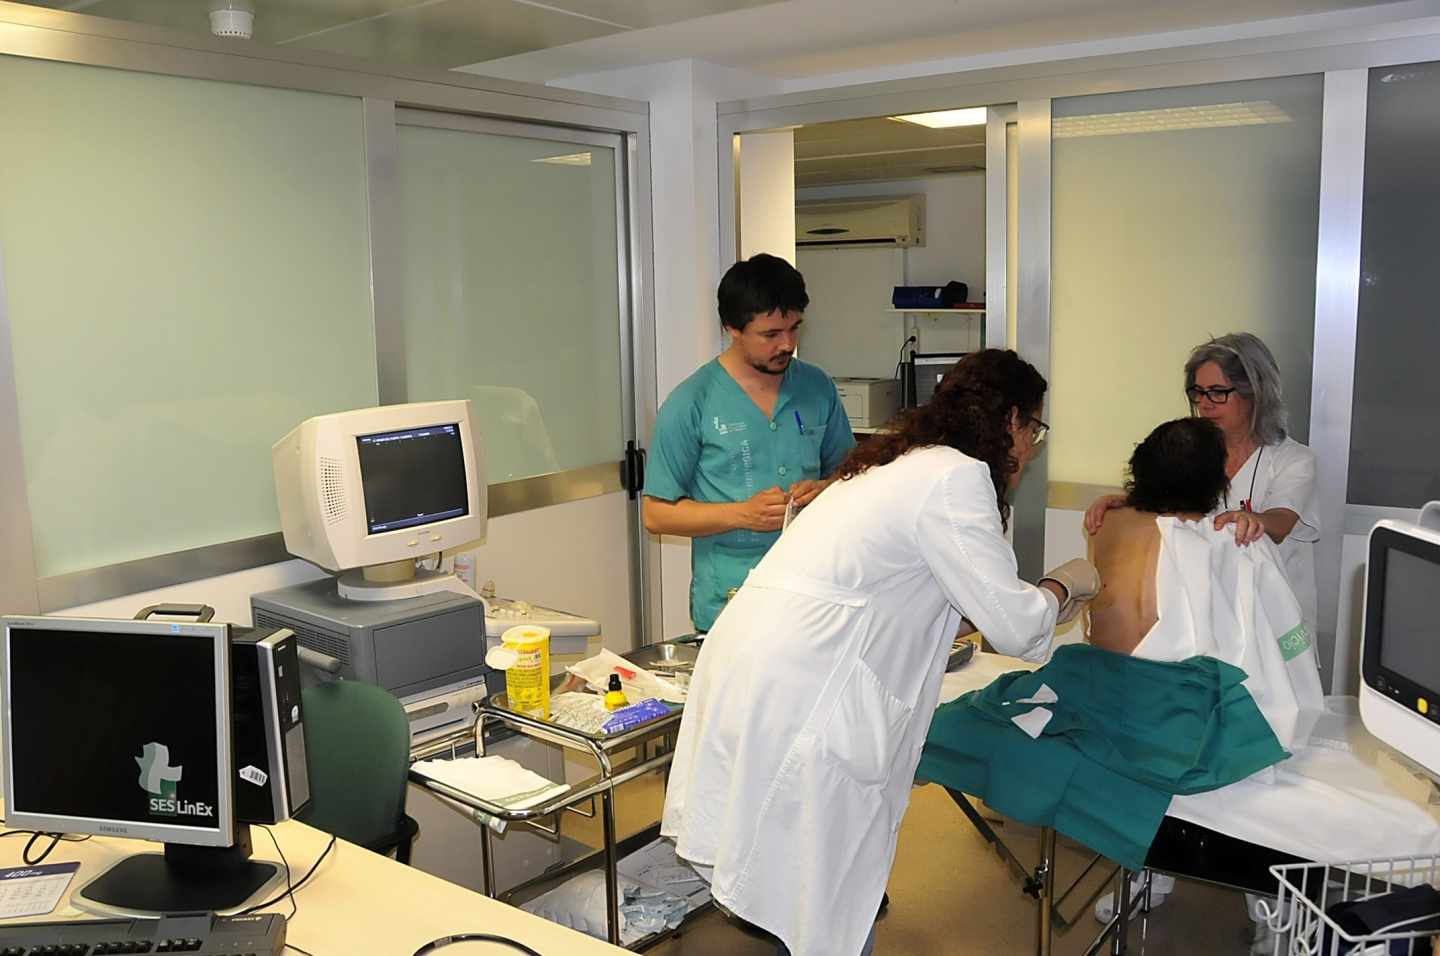 Más de 35.000 pacientes mueren en los hospitales cada año en España por culpa de las bacterias multirresistentes.